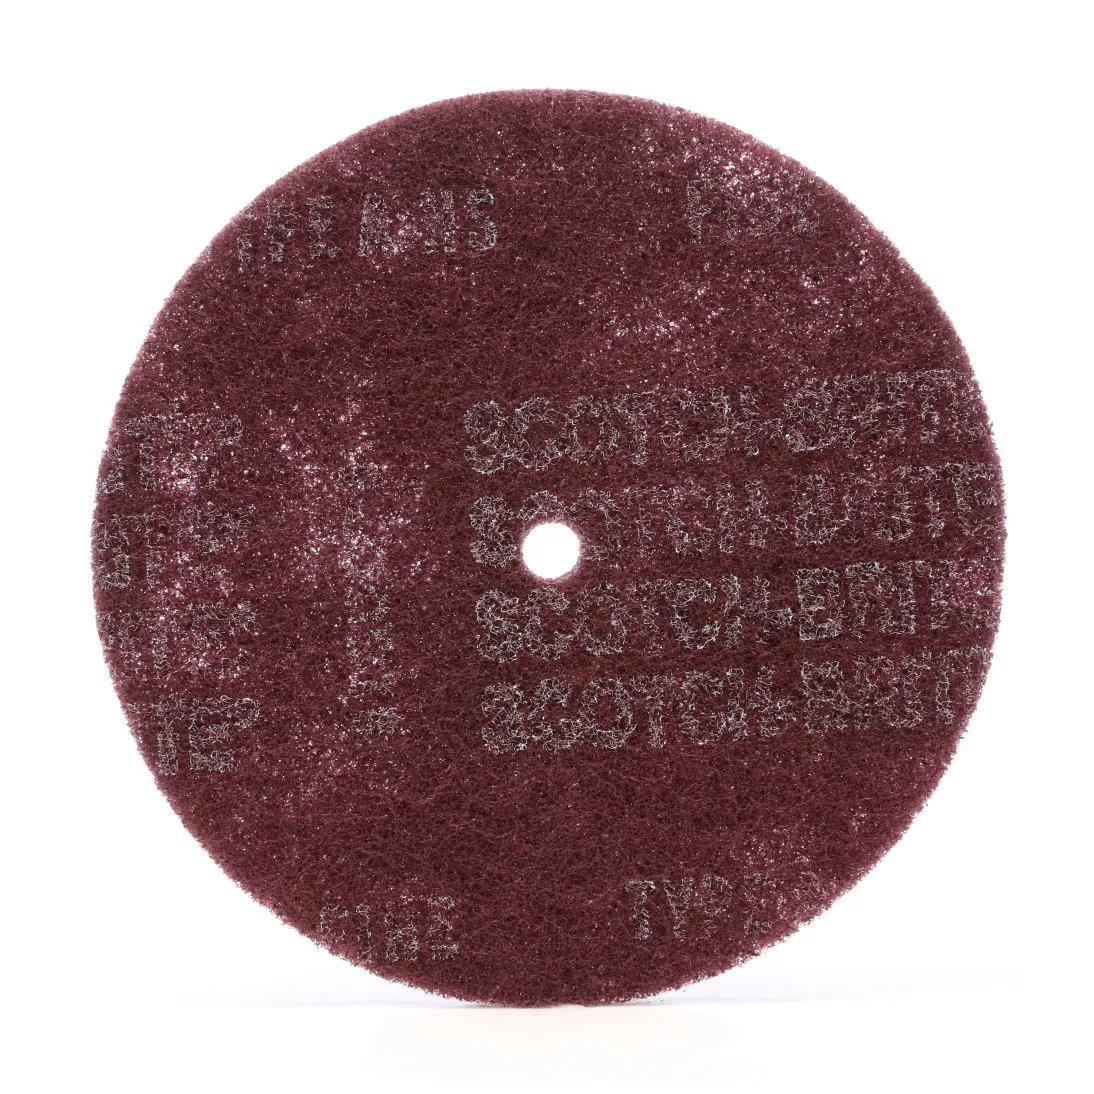 Scotch-Brite™ High Strength Disc, HS-DC, A/O Very Fine, 8 in x 1 in, 50
ea/Case